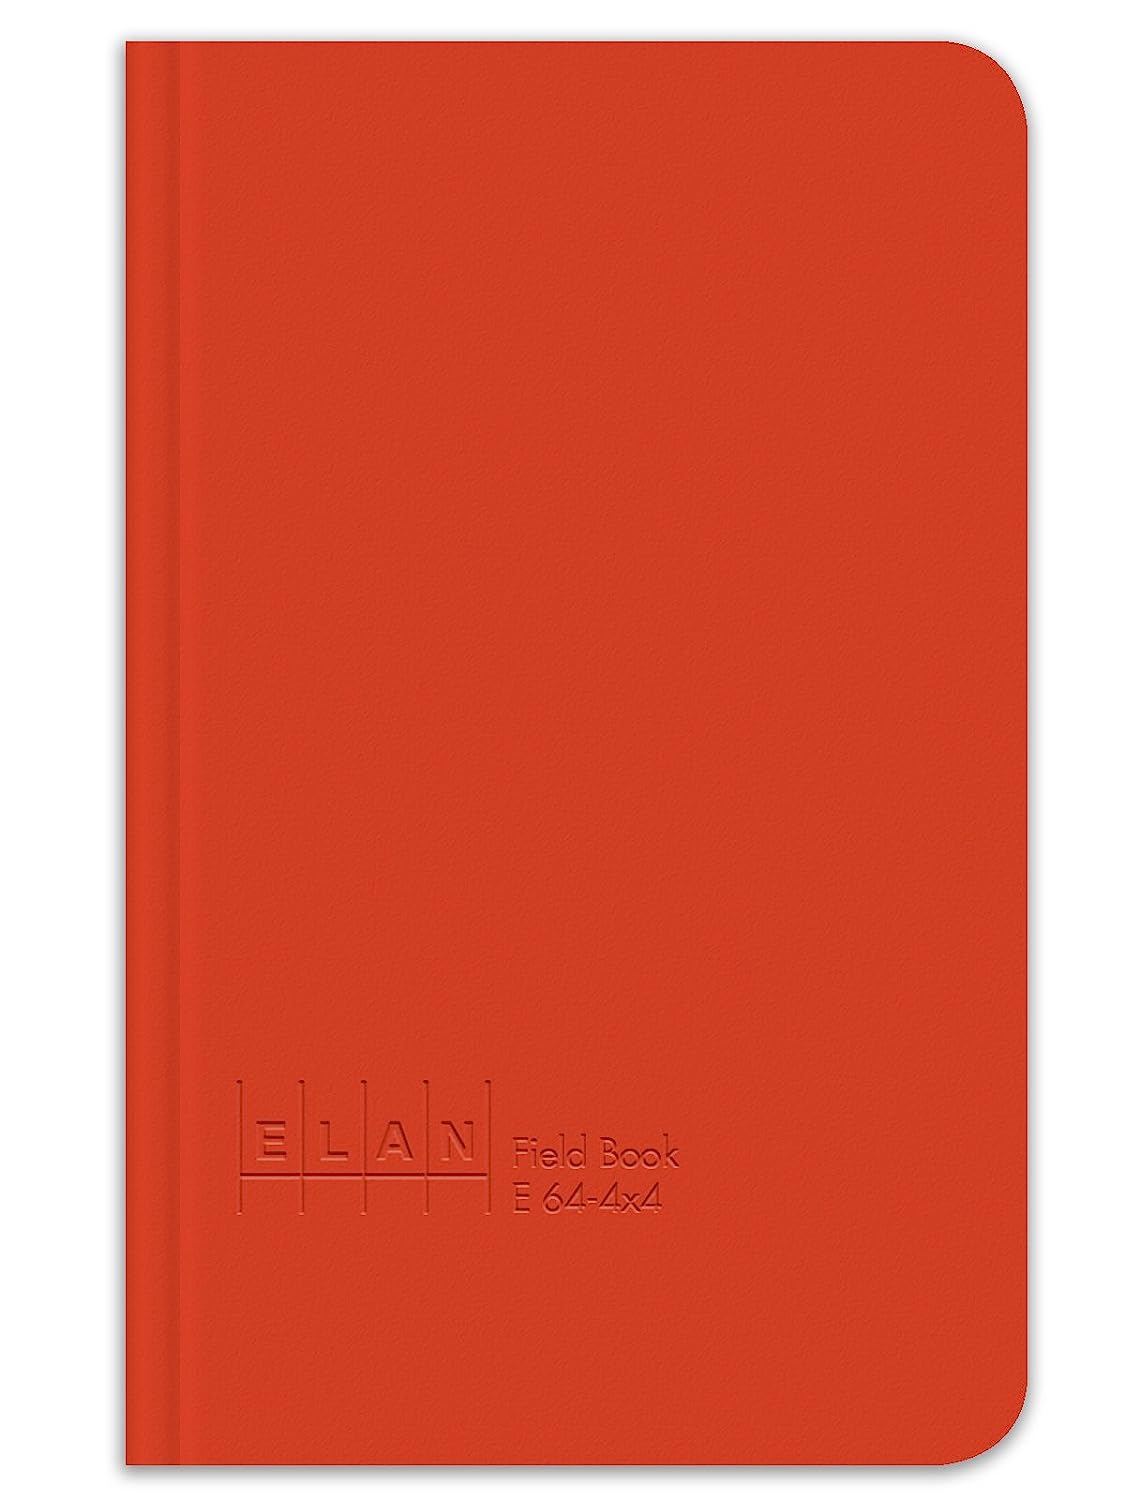 Elan Publishing E64-4x4 Field Book